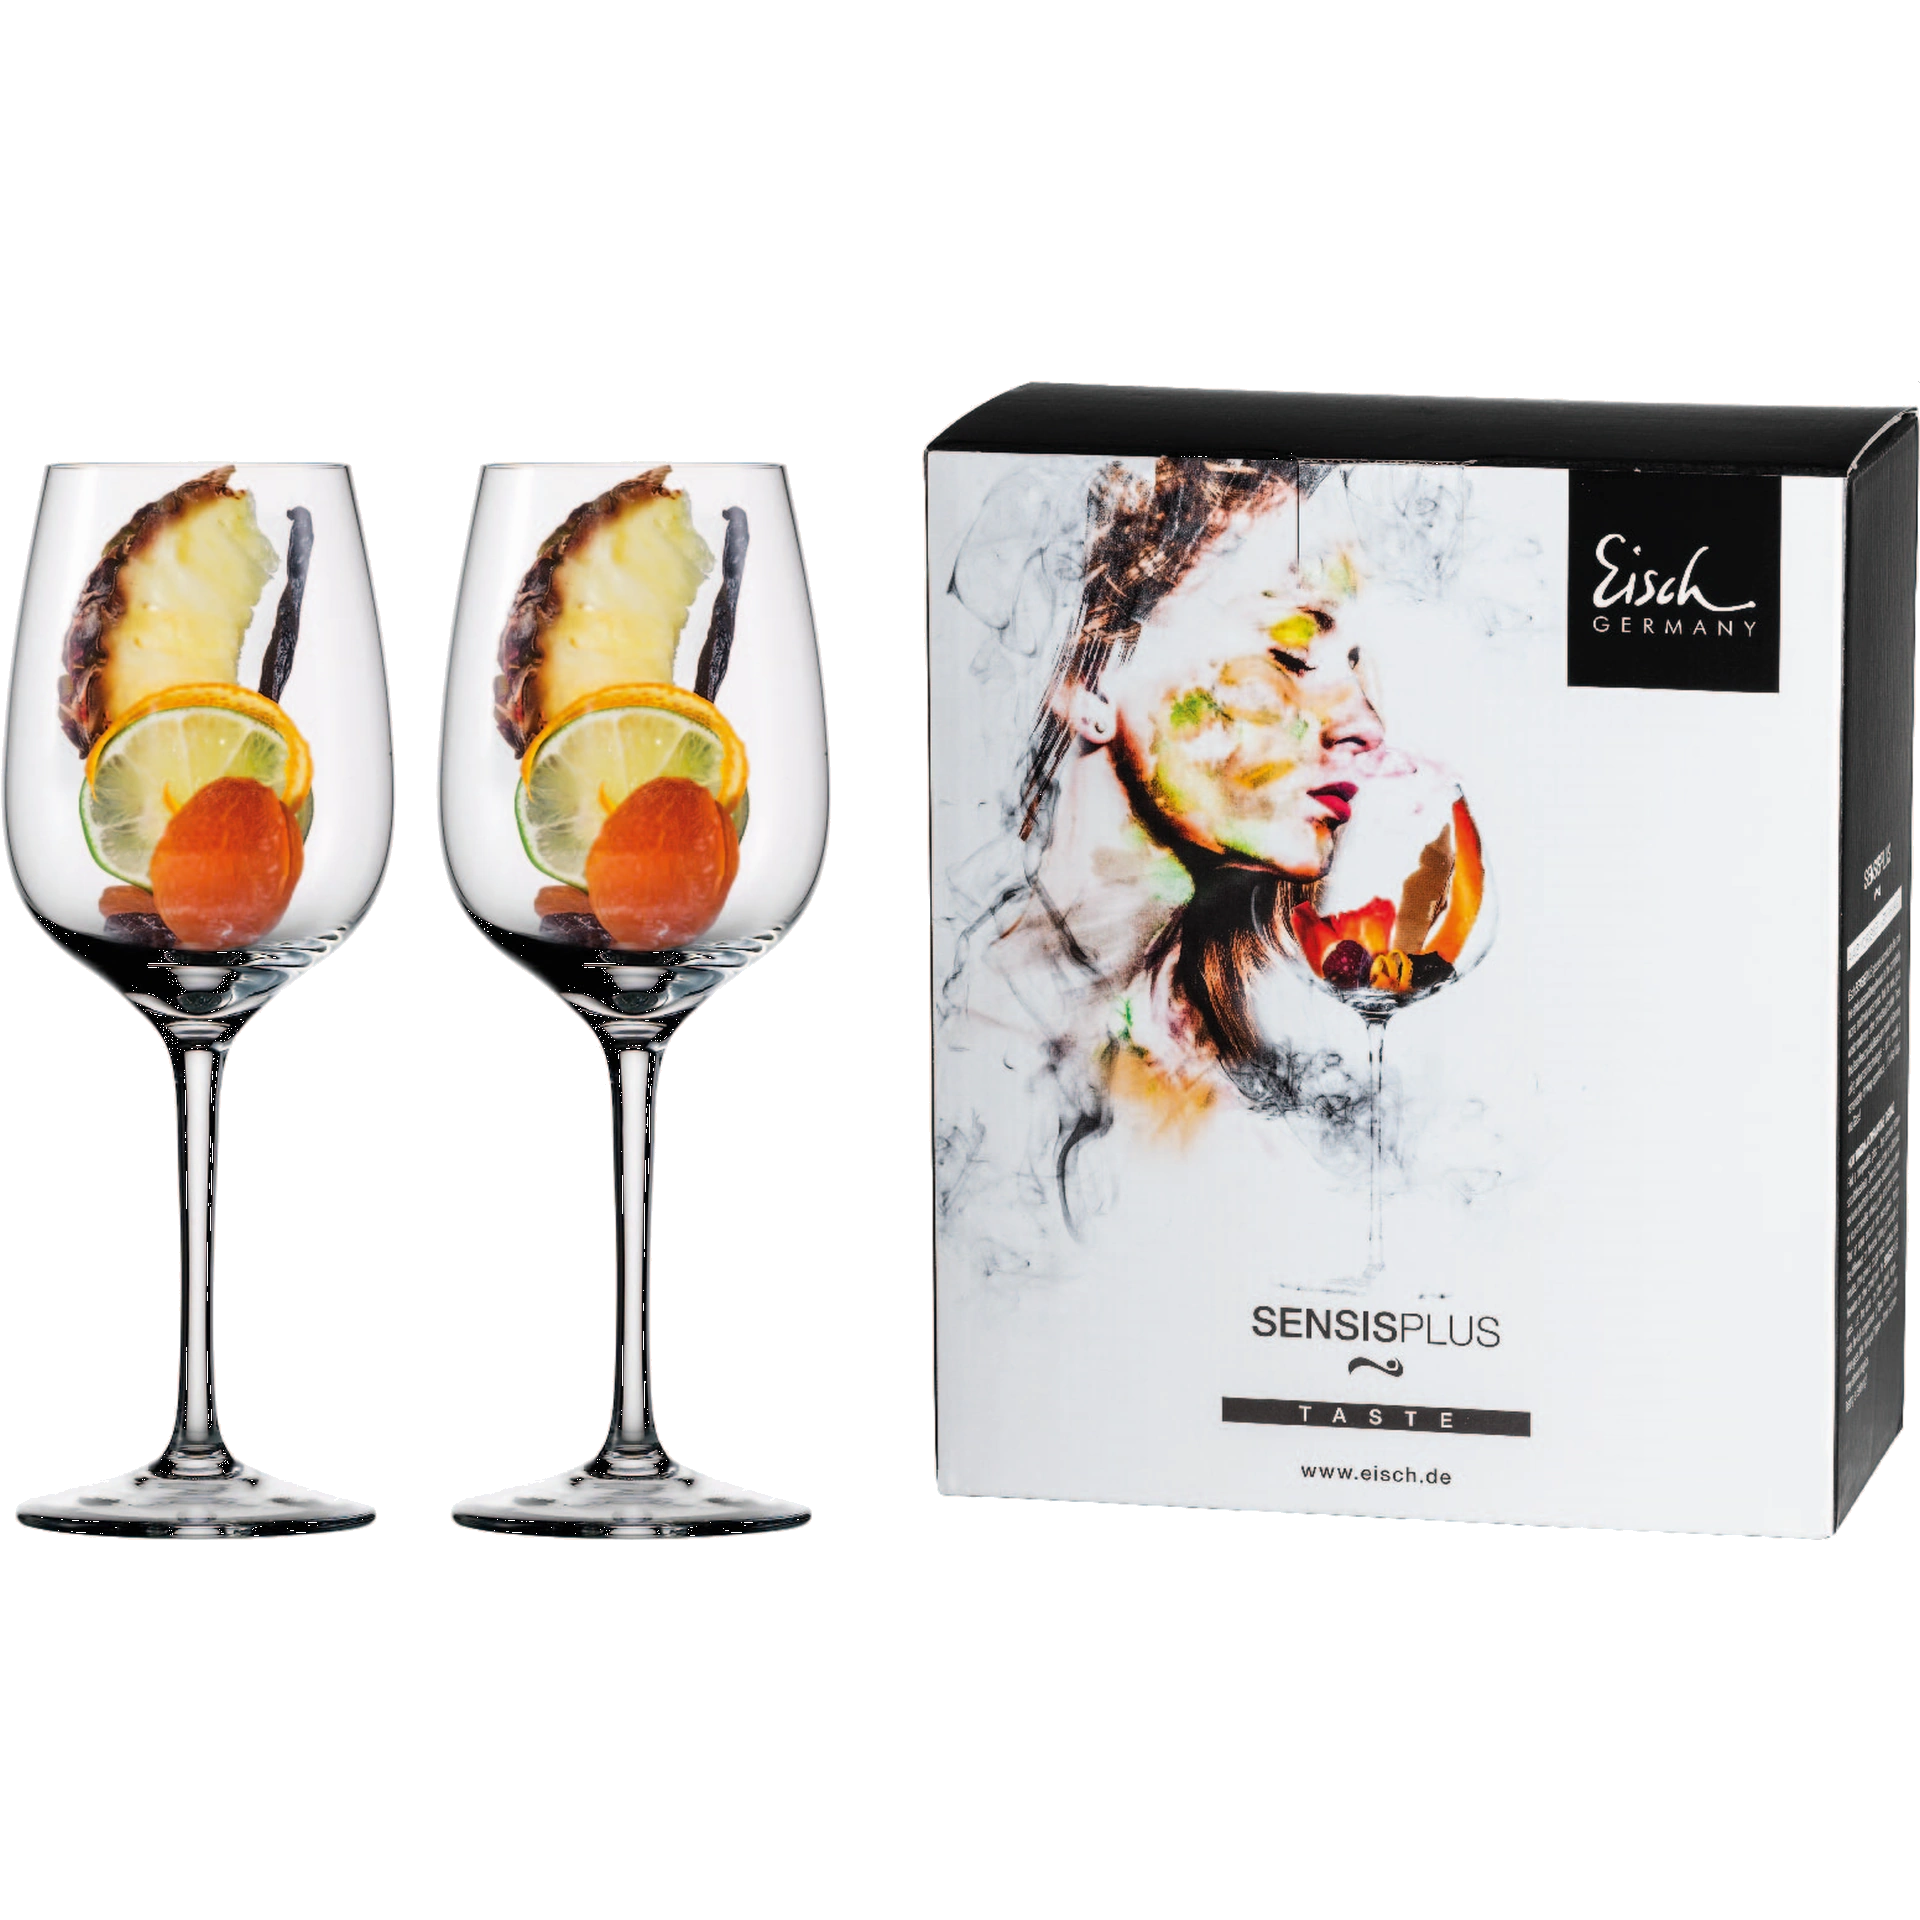 Glas 2 Superior Chardonnay Stück im Eisch SENSISPLUS - Geschenkkarton